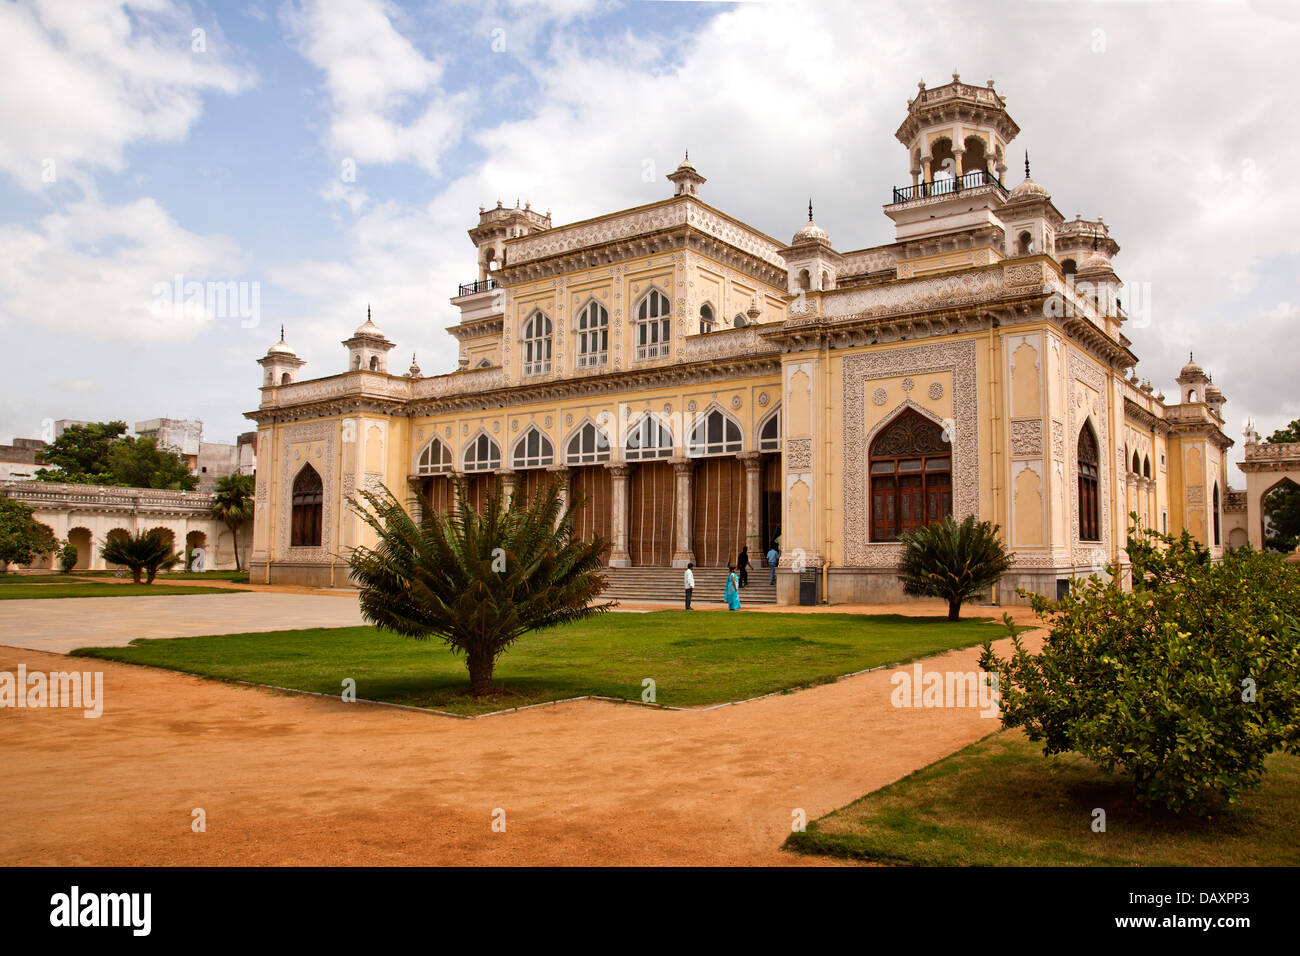 Façade d'un palais, Chowmahalla Palace, Hyderabad, Andhra Pradesh, Inde Banque D'Images